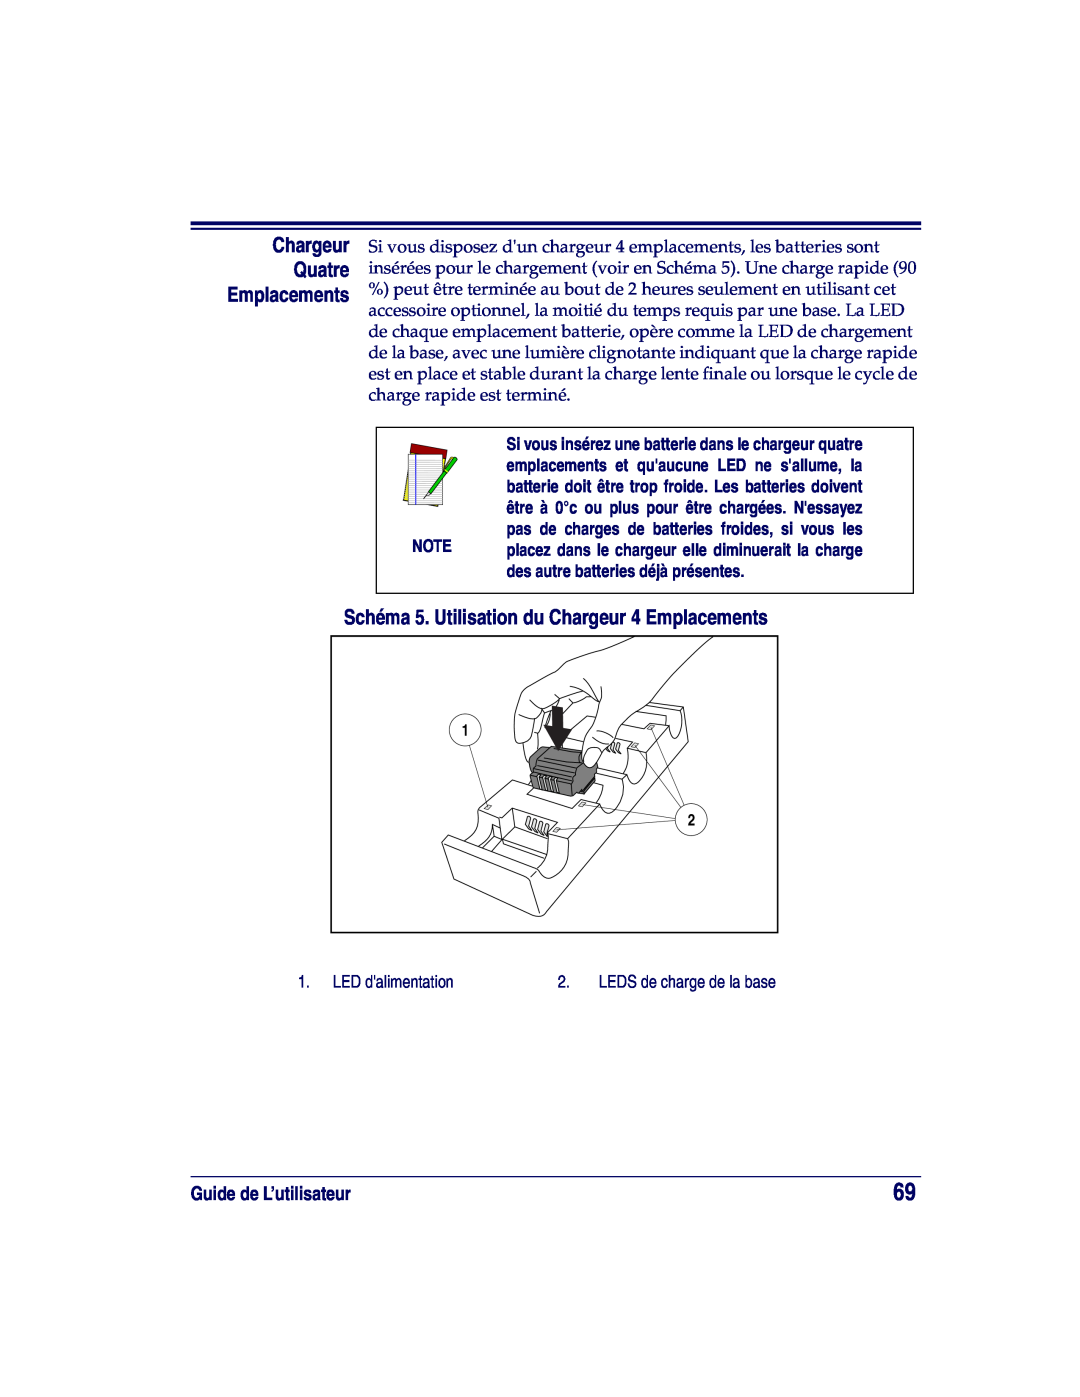 Datalogic Scanning XLR, SR, HD Chargeur Quatre, Schéma 5. Utilisation du Chargeur 4 Emplacements, Guide de L’utilisateur 